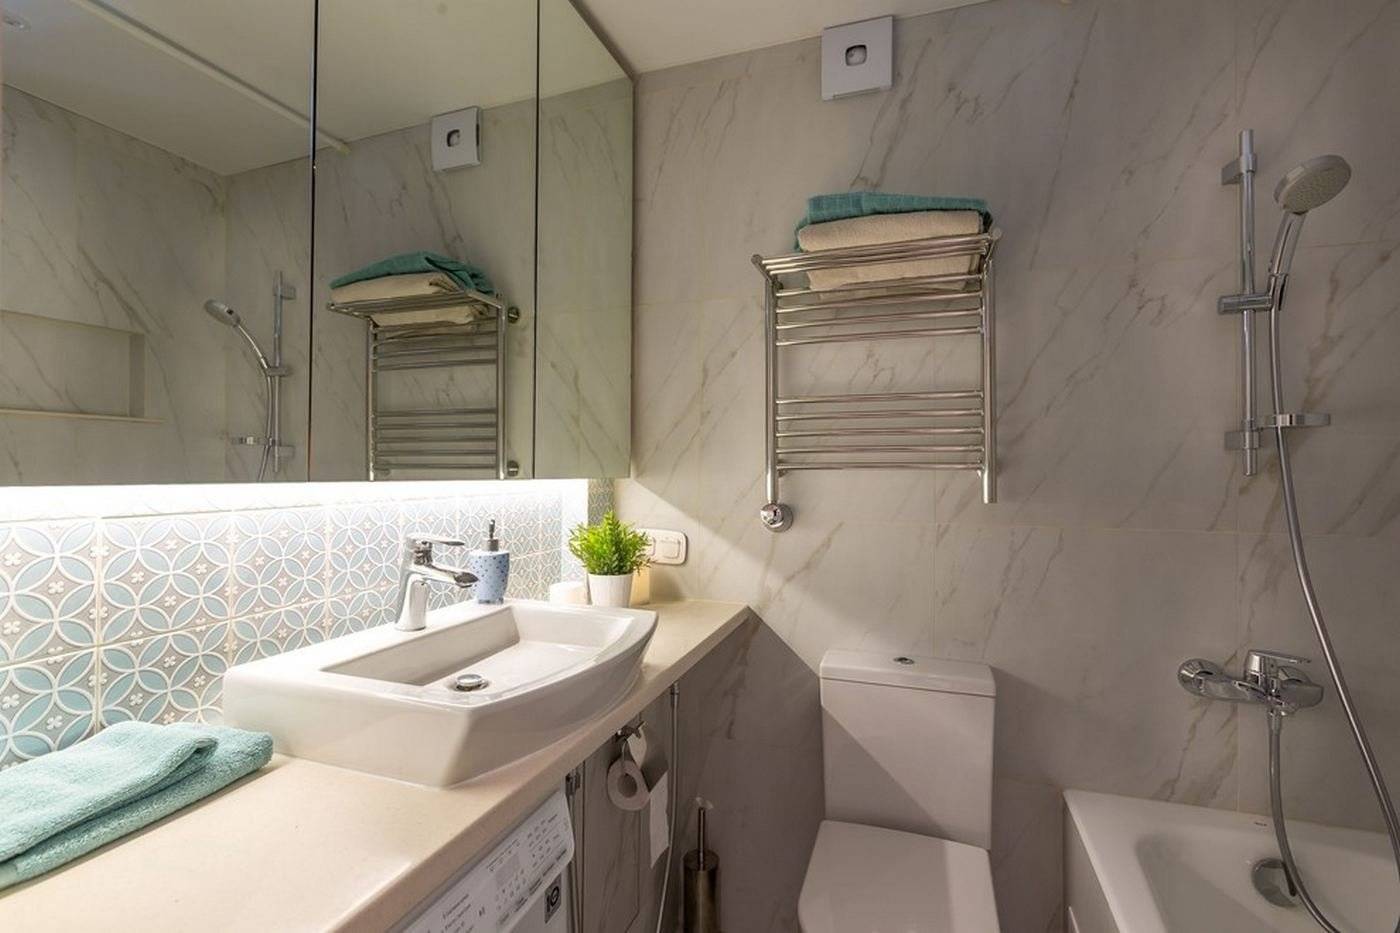 Дизайн ванной комнаты в хрущевке - 90 фото интерьеров после ремонта, красивые идеи маленького санузла